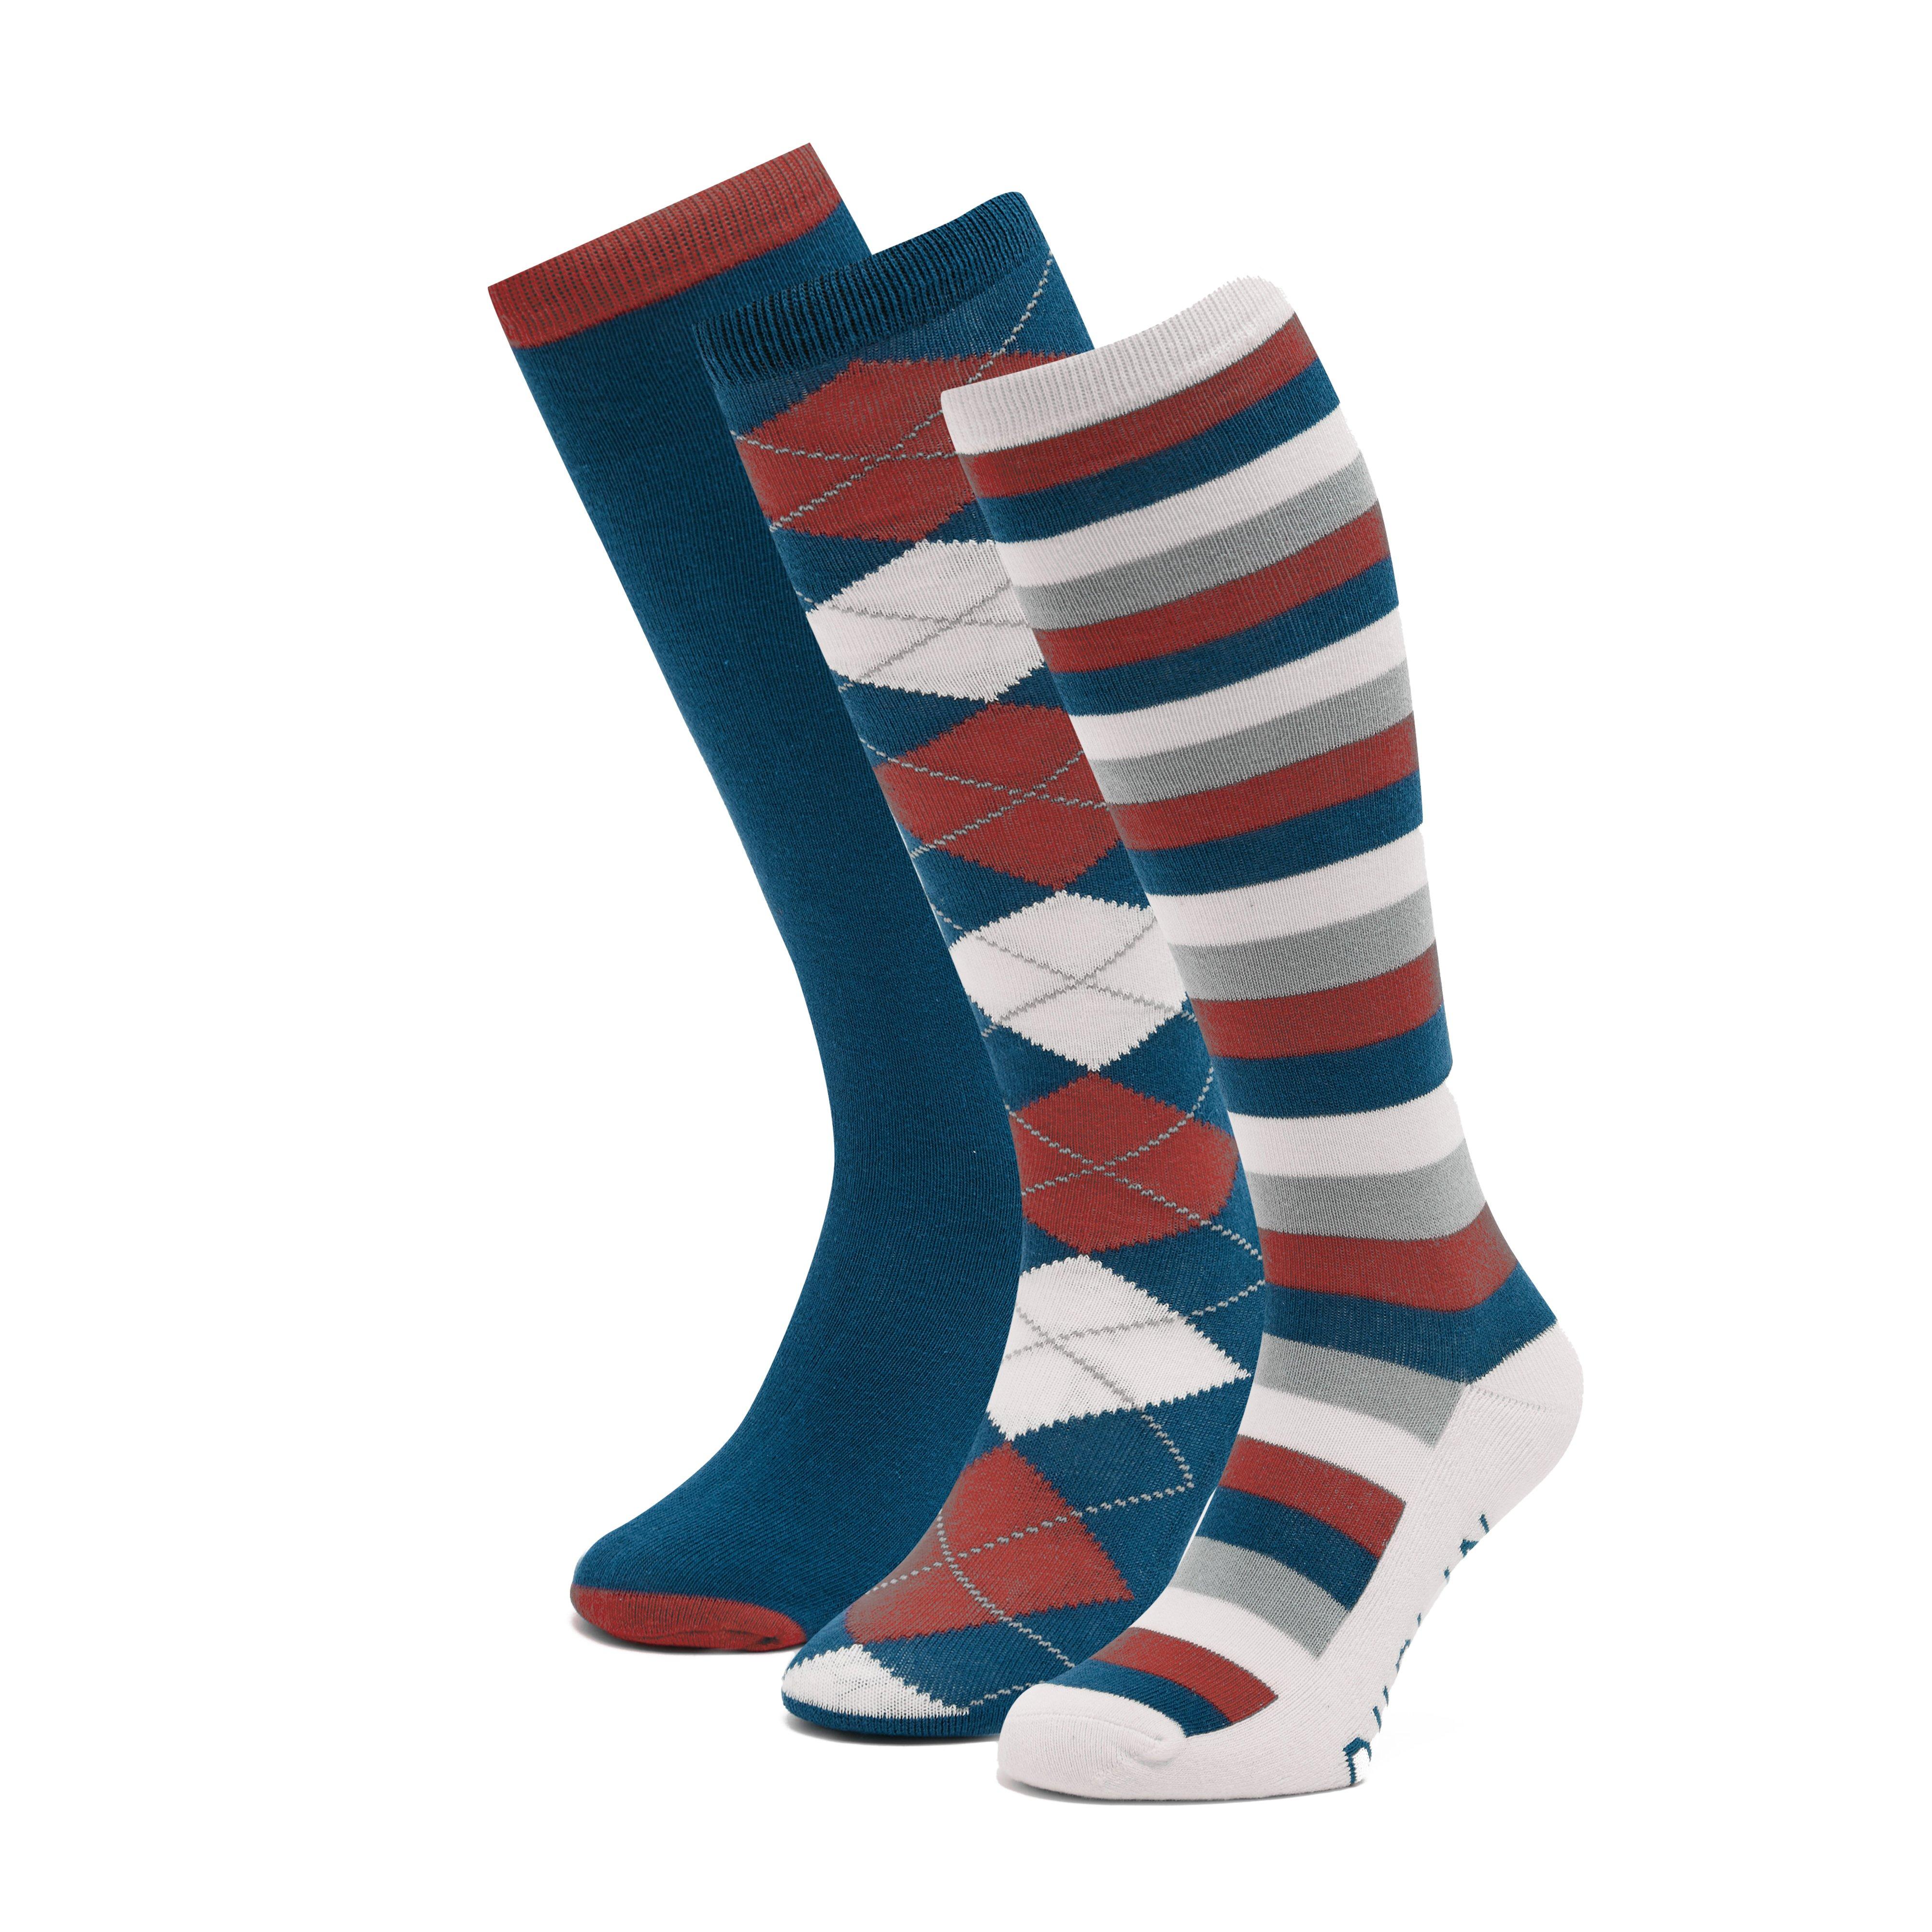 Socks Pack of 3 Navy/Red/White